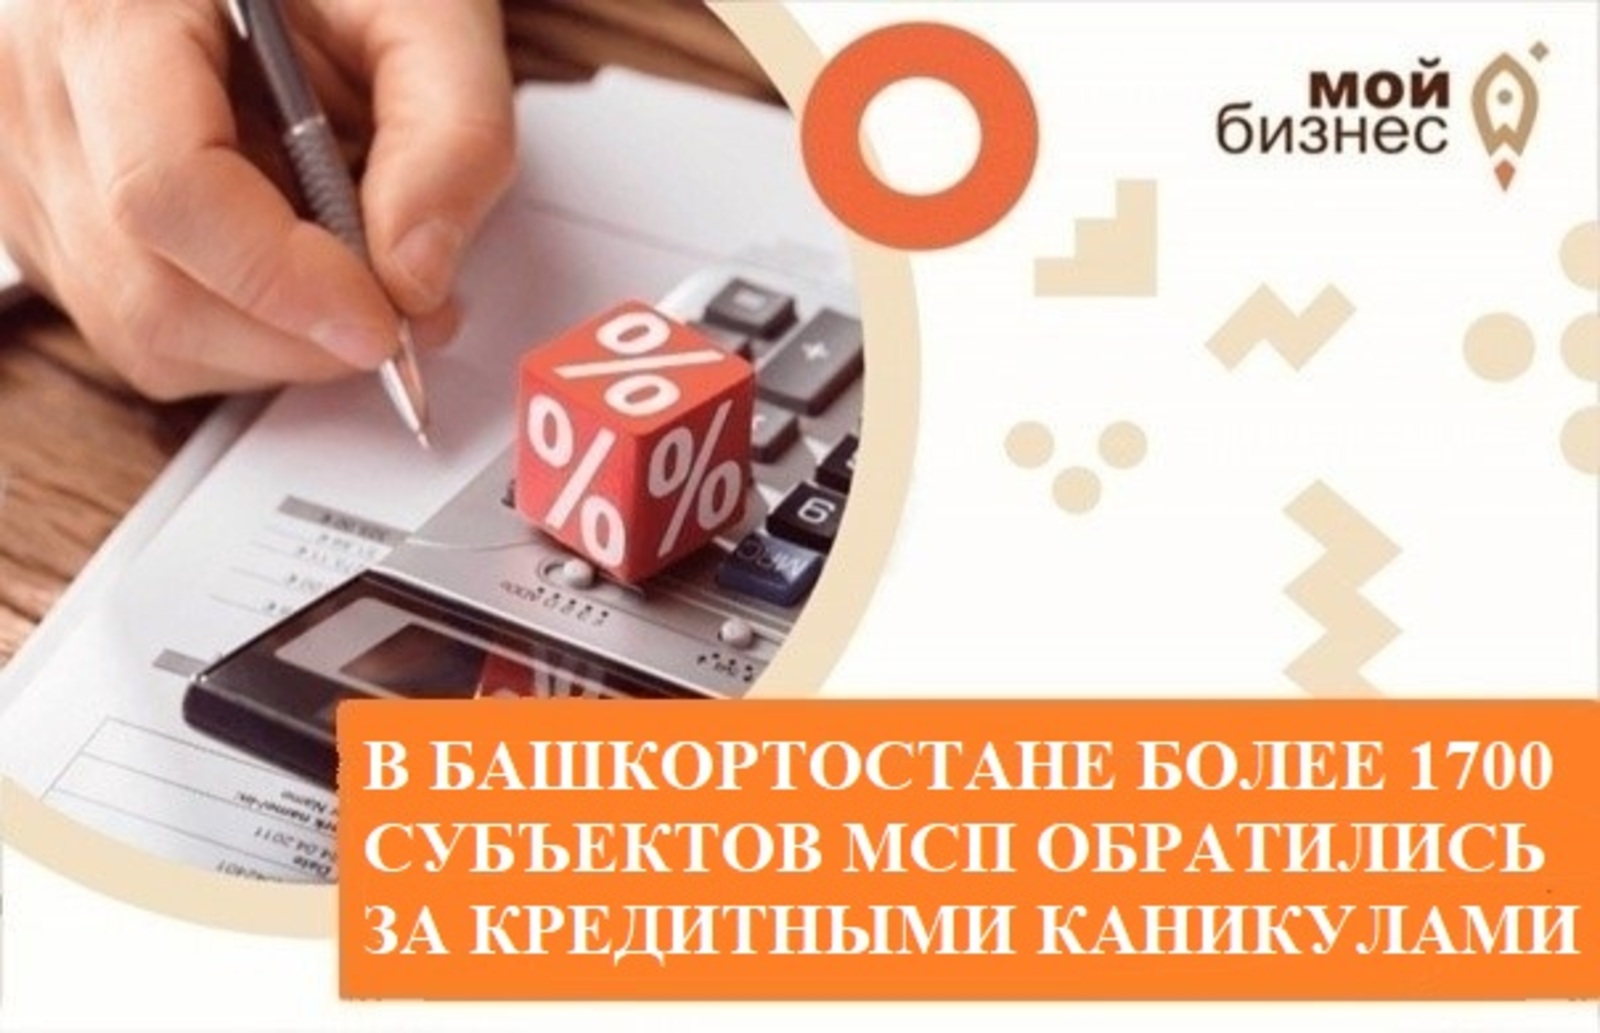 В Башкортостане более 1700 субъектов МСП обратились за кредитными каникулами